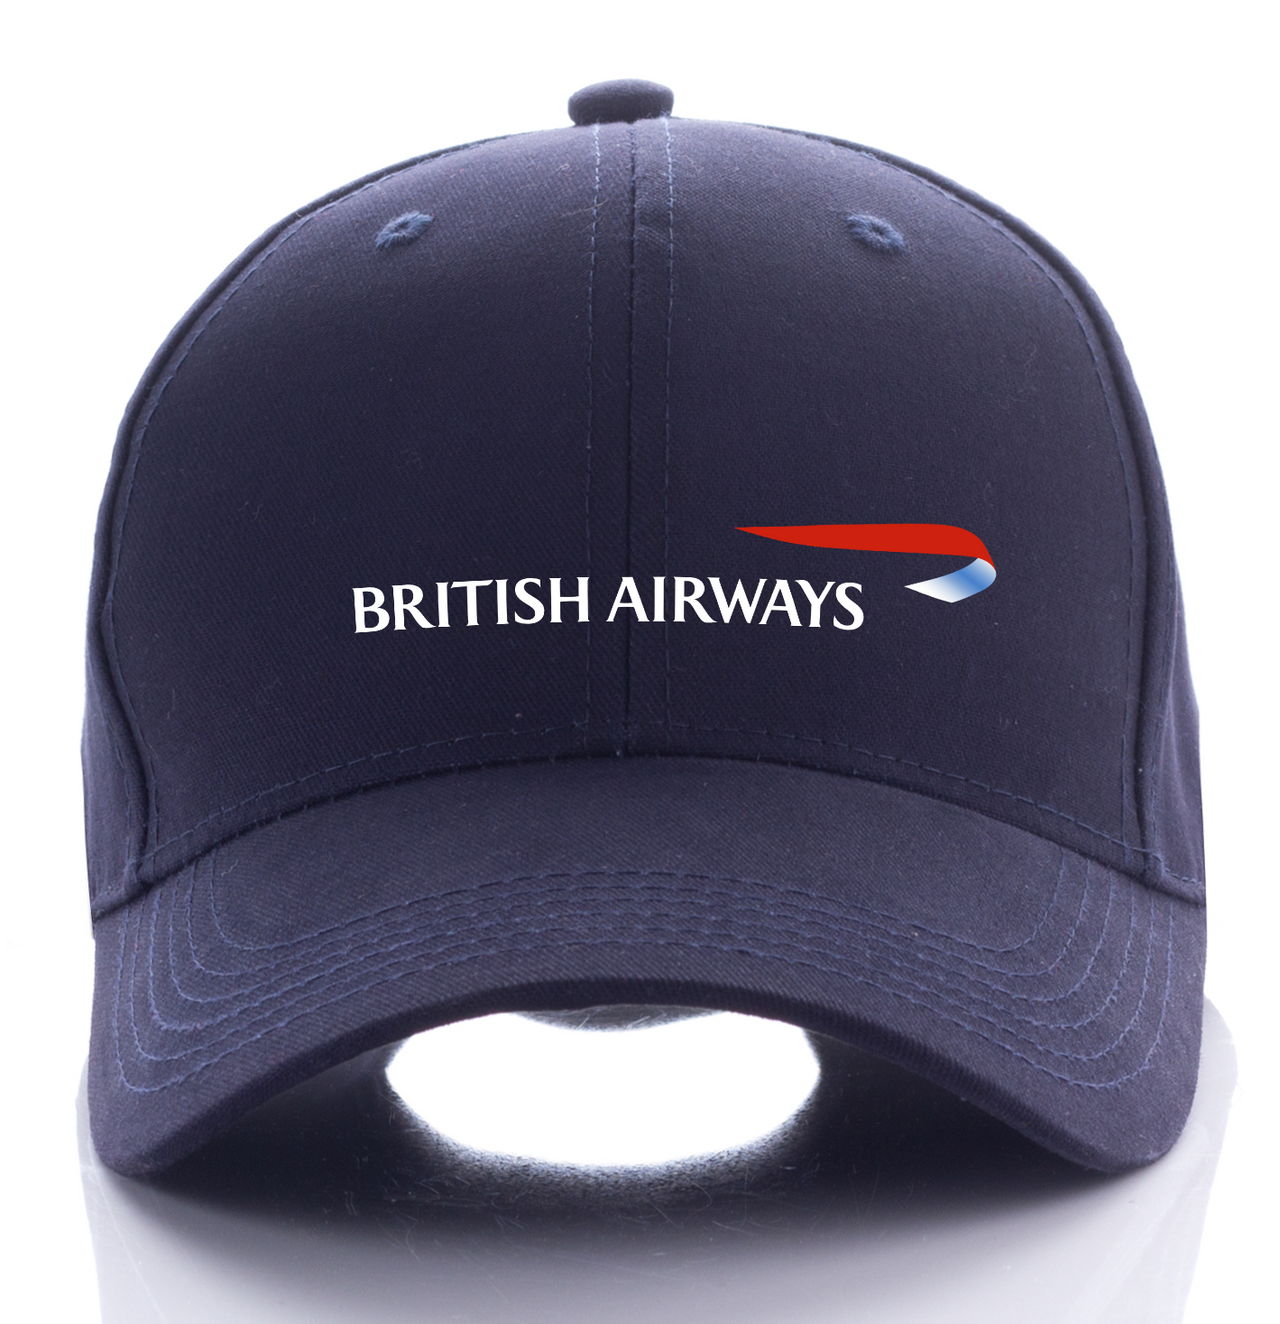 BRITISH AIRLINE DESIGNED CAP